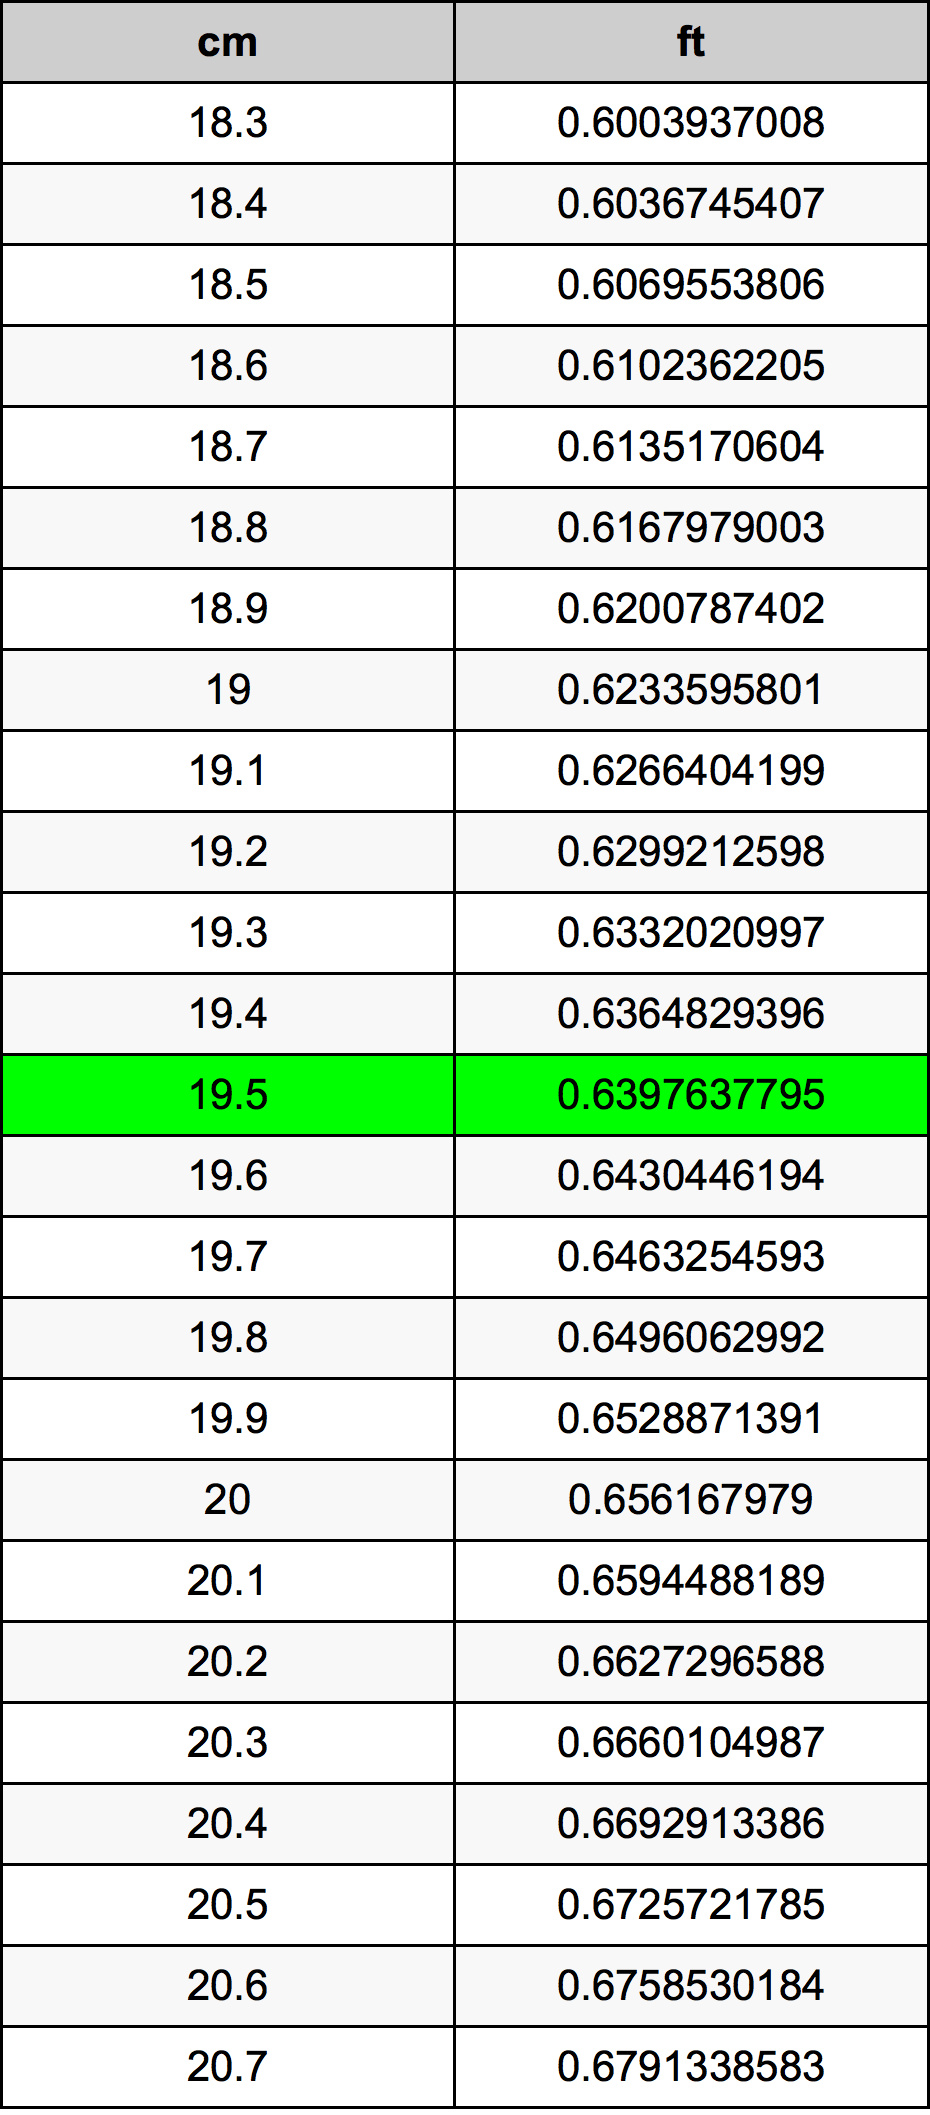 19.5 Centiméter átszámítási táblázat